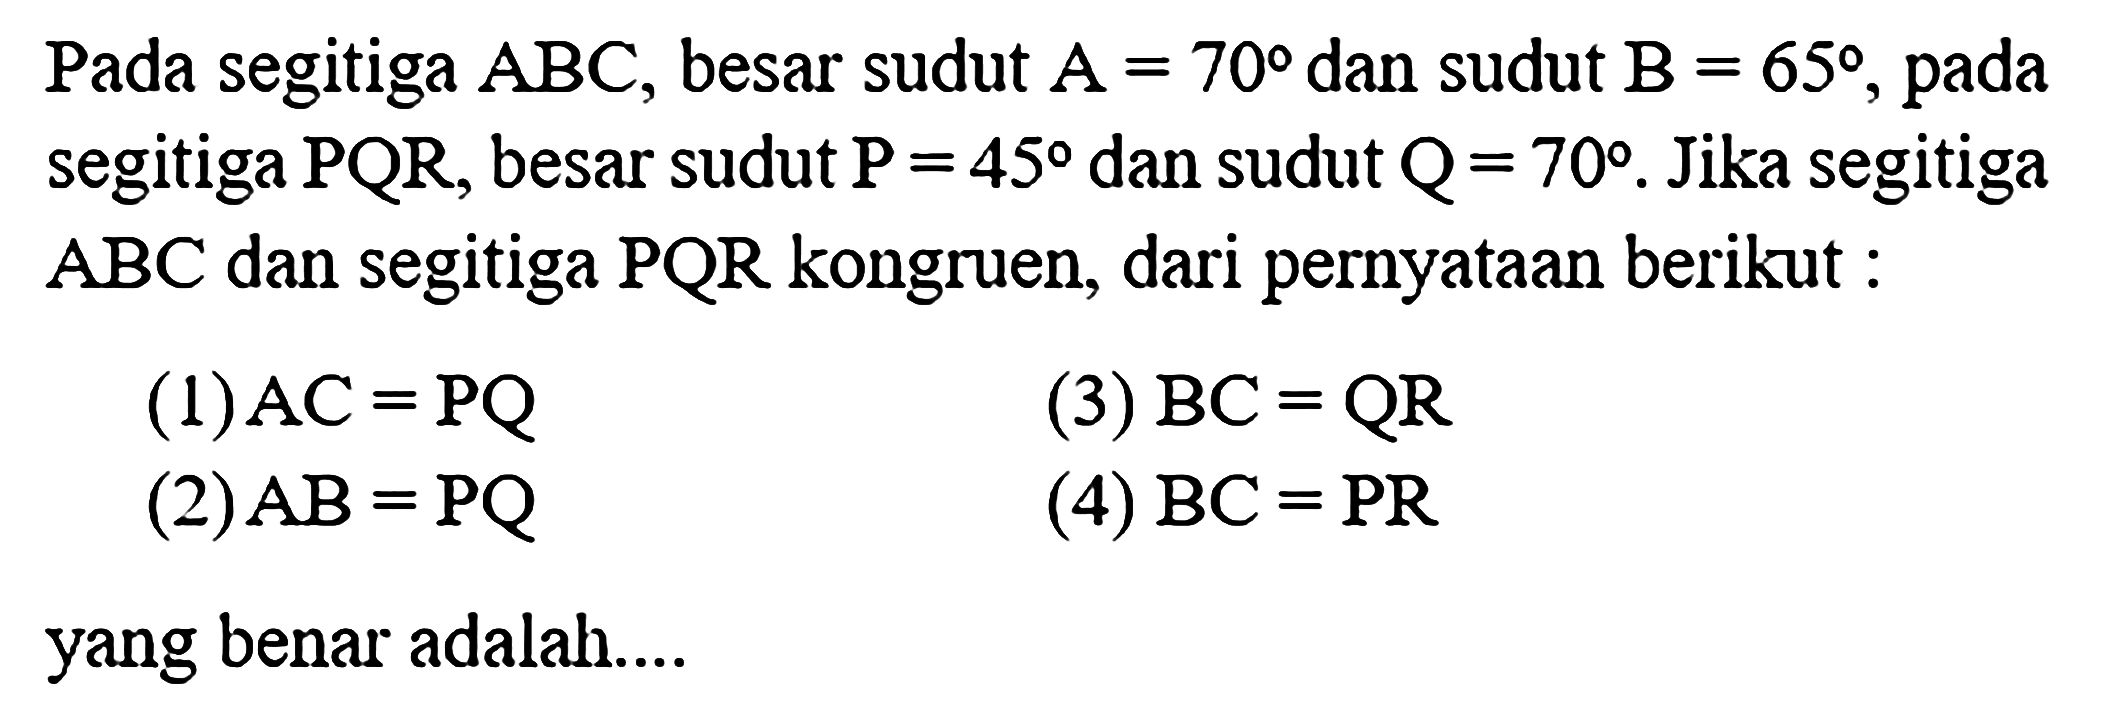 Pada segitiga ABC, besar sudut A=70 dan sudut B=65, pada segitiga PQR, besar sudut P=45 dan sudut Q=70. Jika segitiga ABC dan segitiga PQR kongruen, dari pernyataan berikut : (1)  AC = PQ (2)  AB = PQ (3)  BC = QR (4)  BC = PR yang benar adalah....